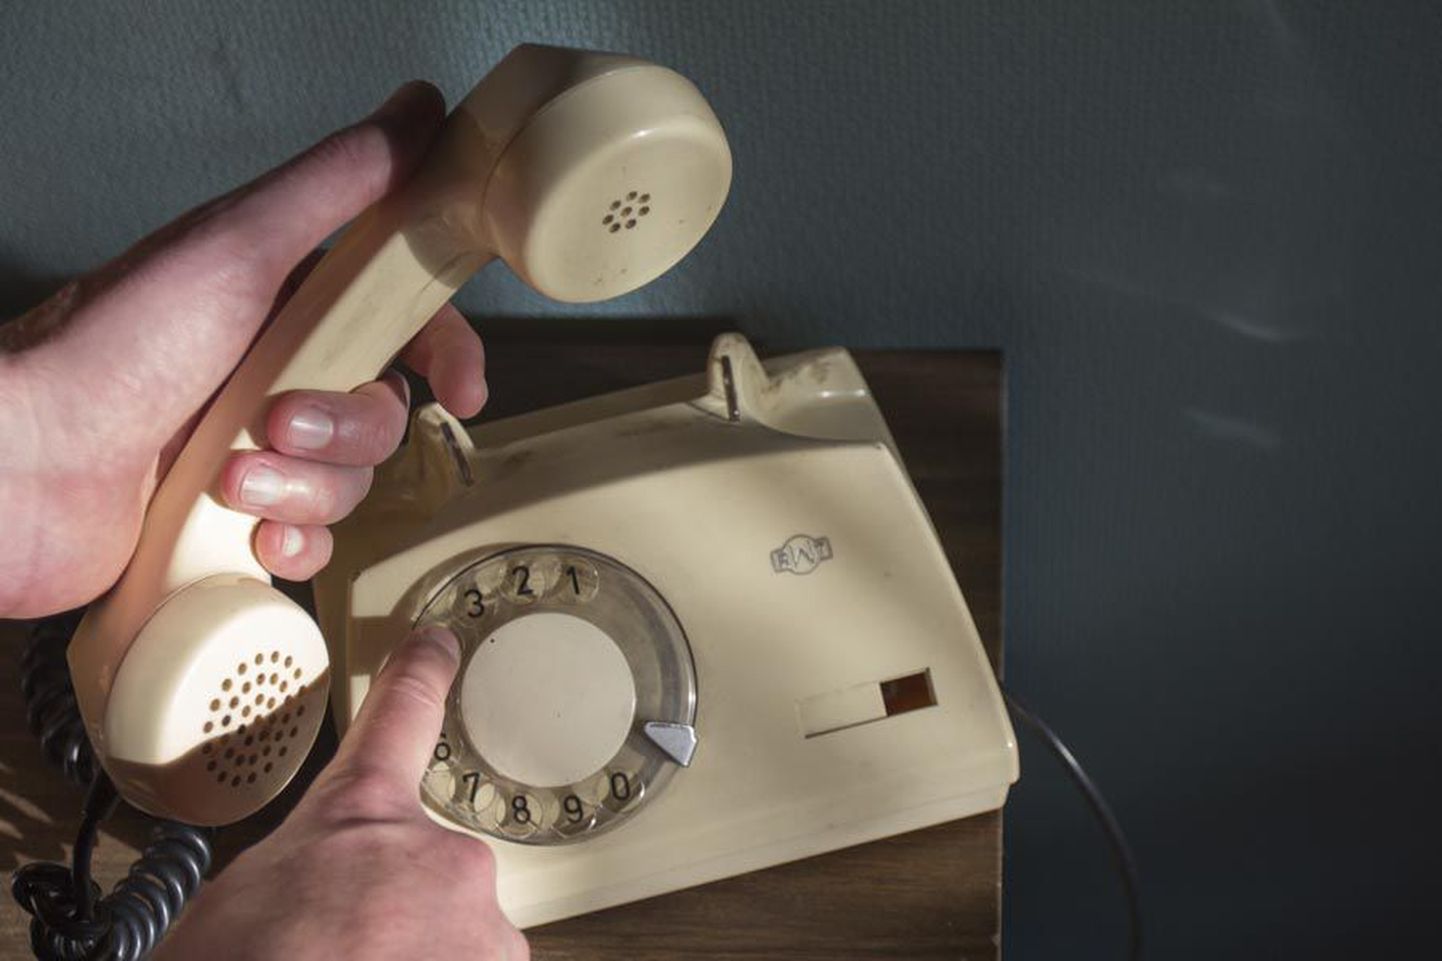 Vanad kettaga lauatelefonid näivad tänapäeval rariteetsed, kuigi osa neist on endiselt argikasutuses. Nii ka see Viljandis digivõrgus töötav mudel, mis on kokku pandud 1982. aastal Poolamaal. Hääbuvas analoogvõrgus oskavad samuti toimetada klahvidega aparaadid.